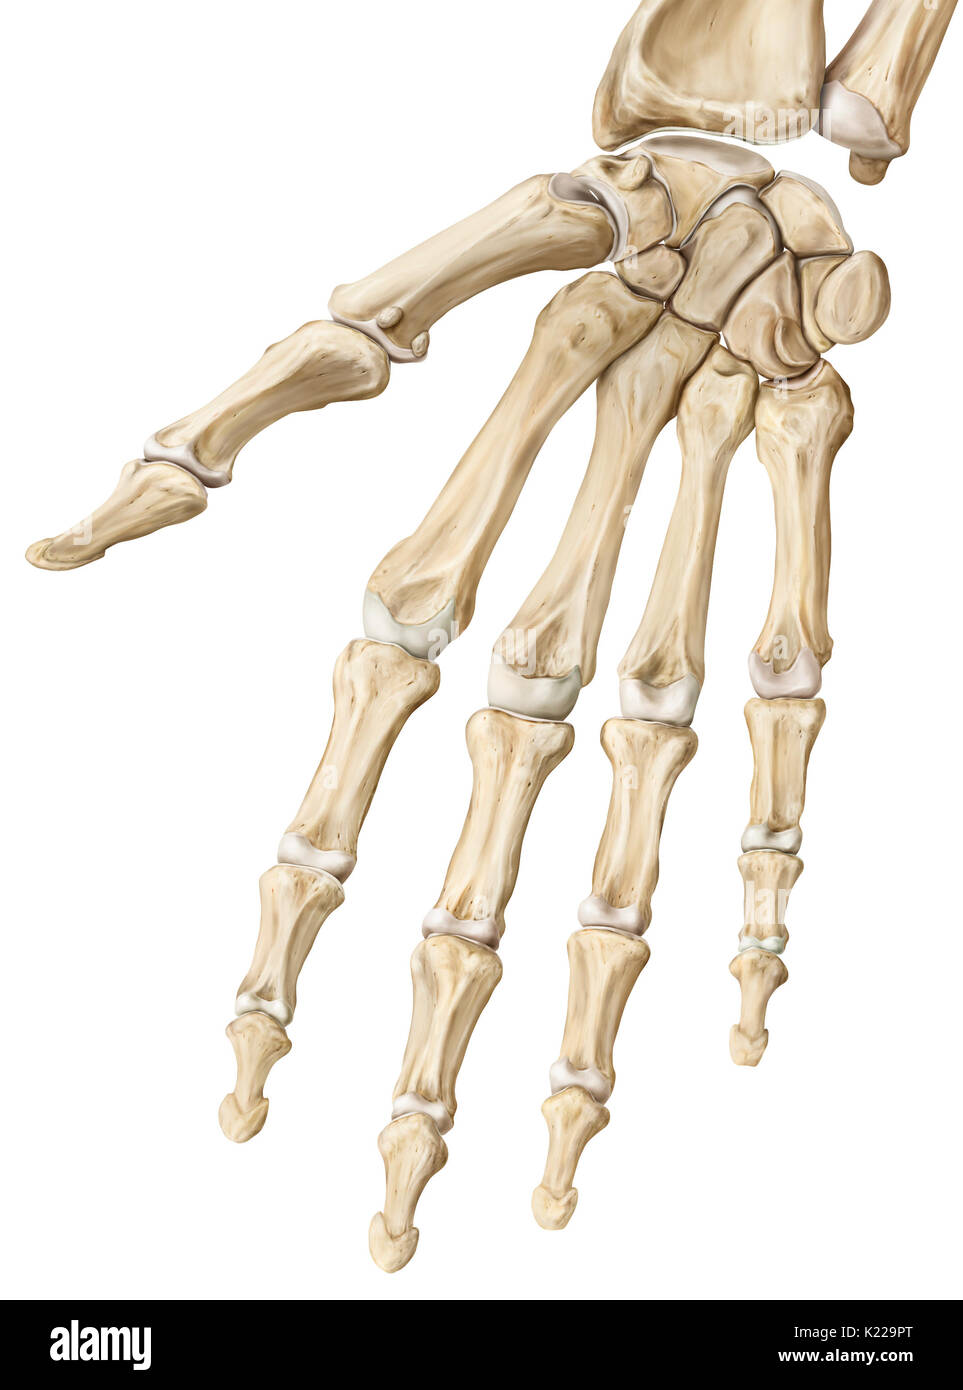 I giunti interfalangeo sono articolazioni sinoviali che collegano le falangi delle dita o le dita. Il grande grado di mobilità nelle dita consente loro di afferrare gli oggetti. Dita del piede, che sono meno mobili, contribuire a camminare e di equilibrio quando in piedi. I giunti interfalangeo sono rinforzati da una rete di grandi dimensioni di tendini e legamenti. Foto Stock